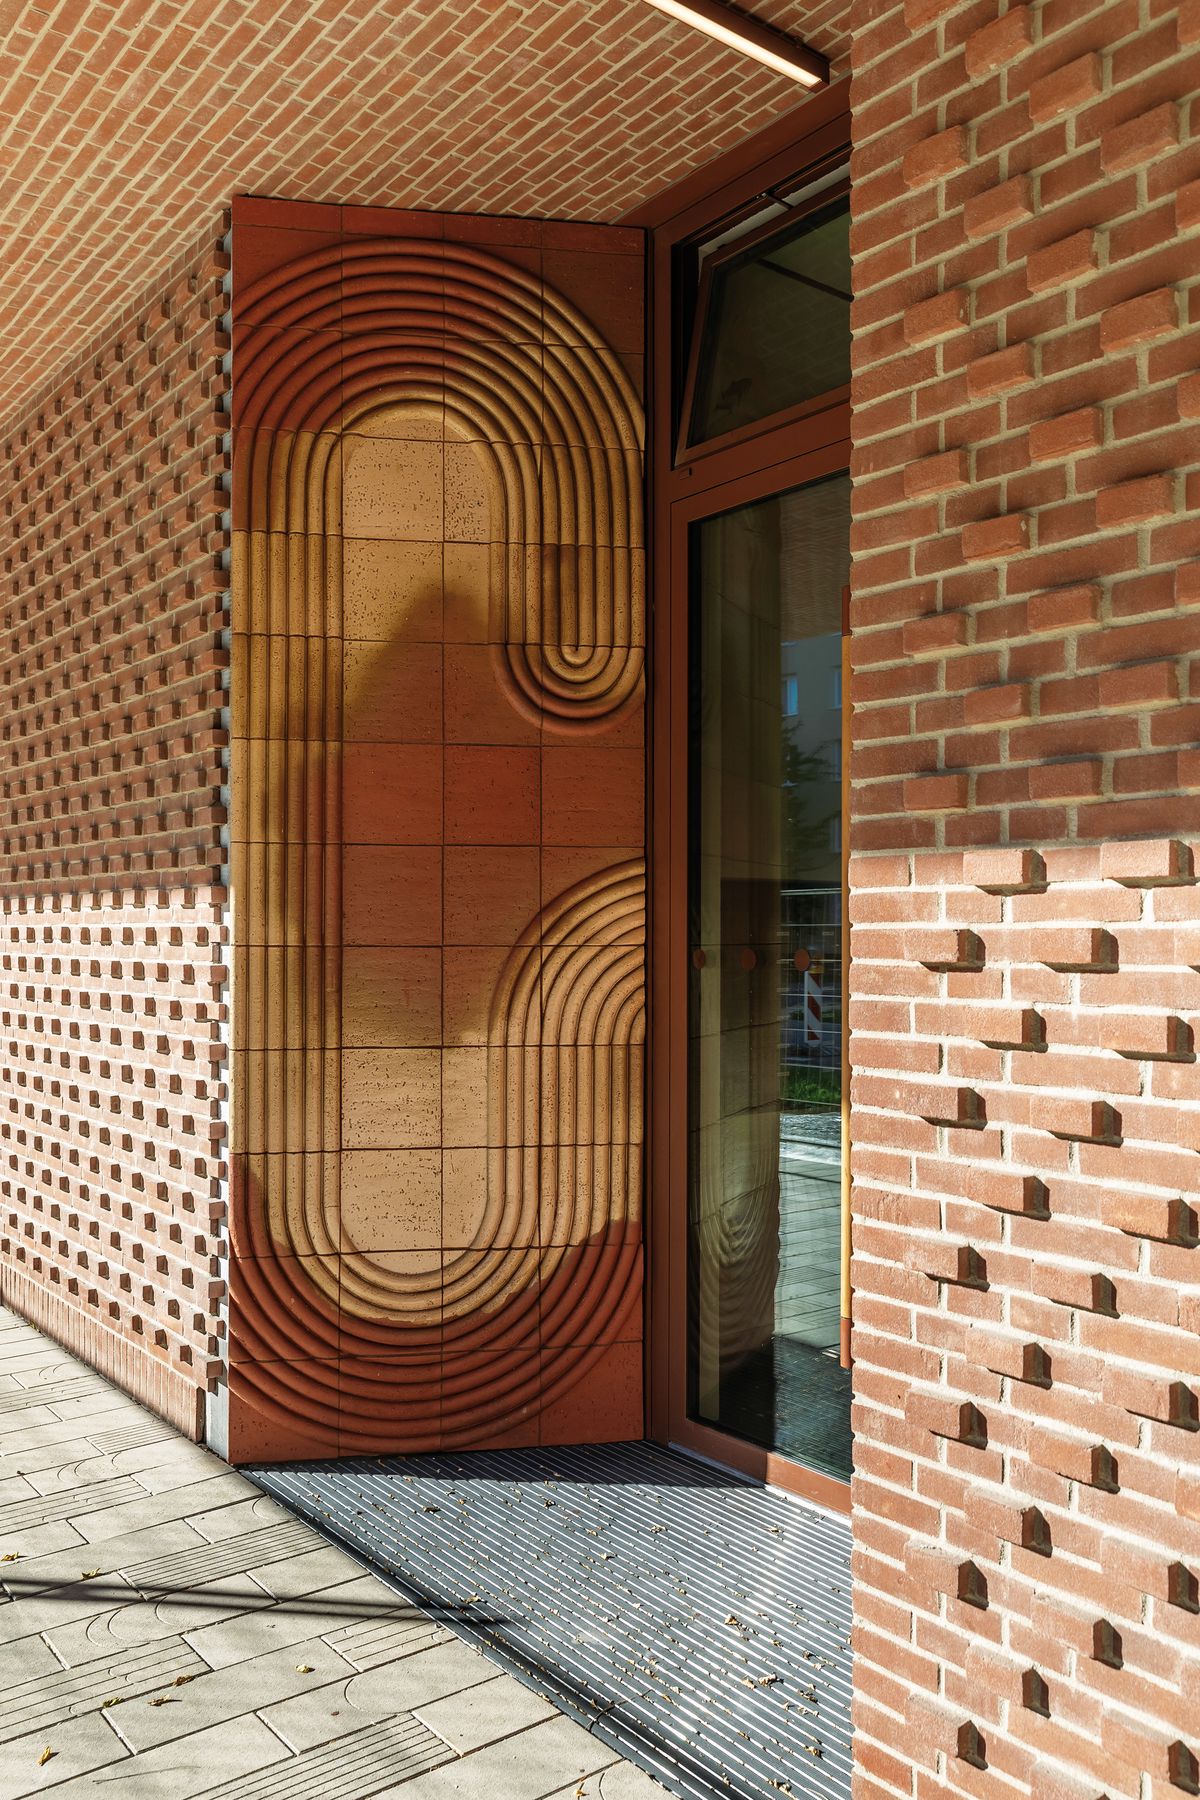 Vstupy do bytového domu ZWIRN 1 definujú umelecké diela od umelkyne Veroniky Selingerovej. Originálnym prvkom je i jedinečné drevené madlo dverí.